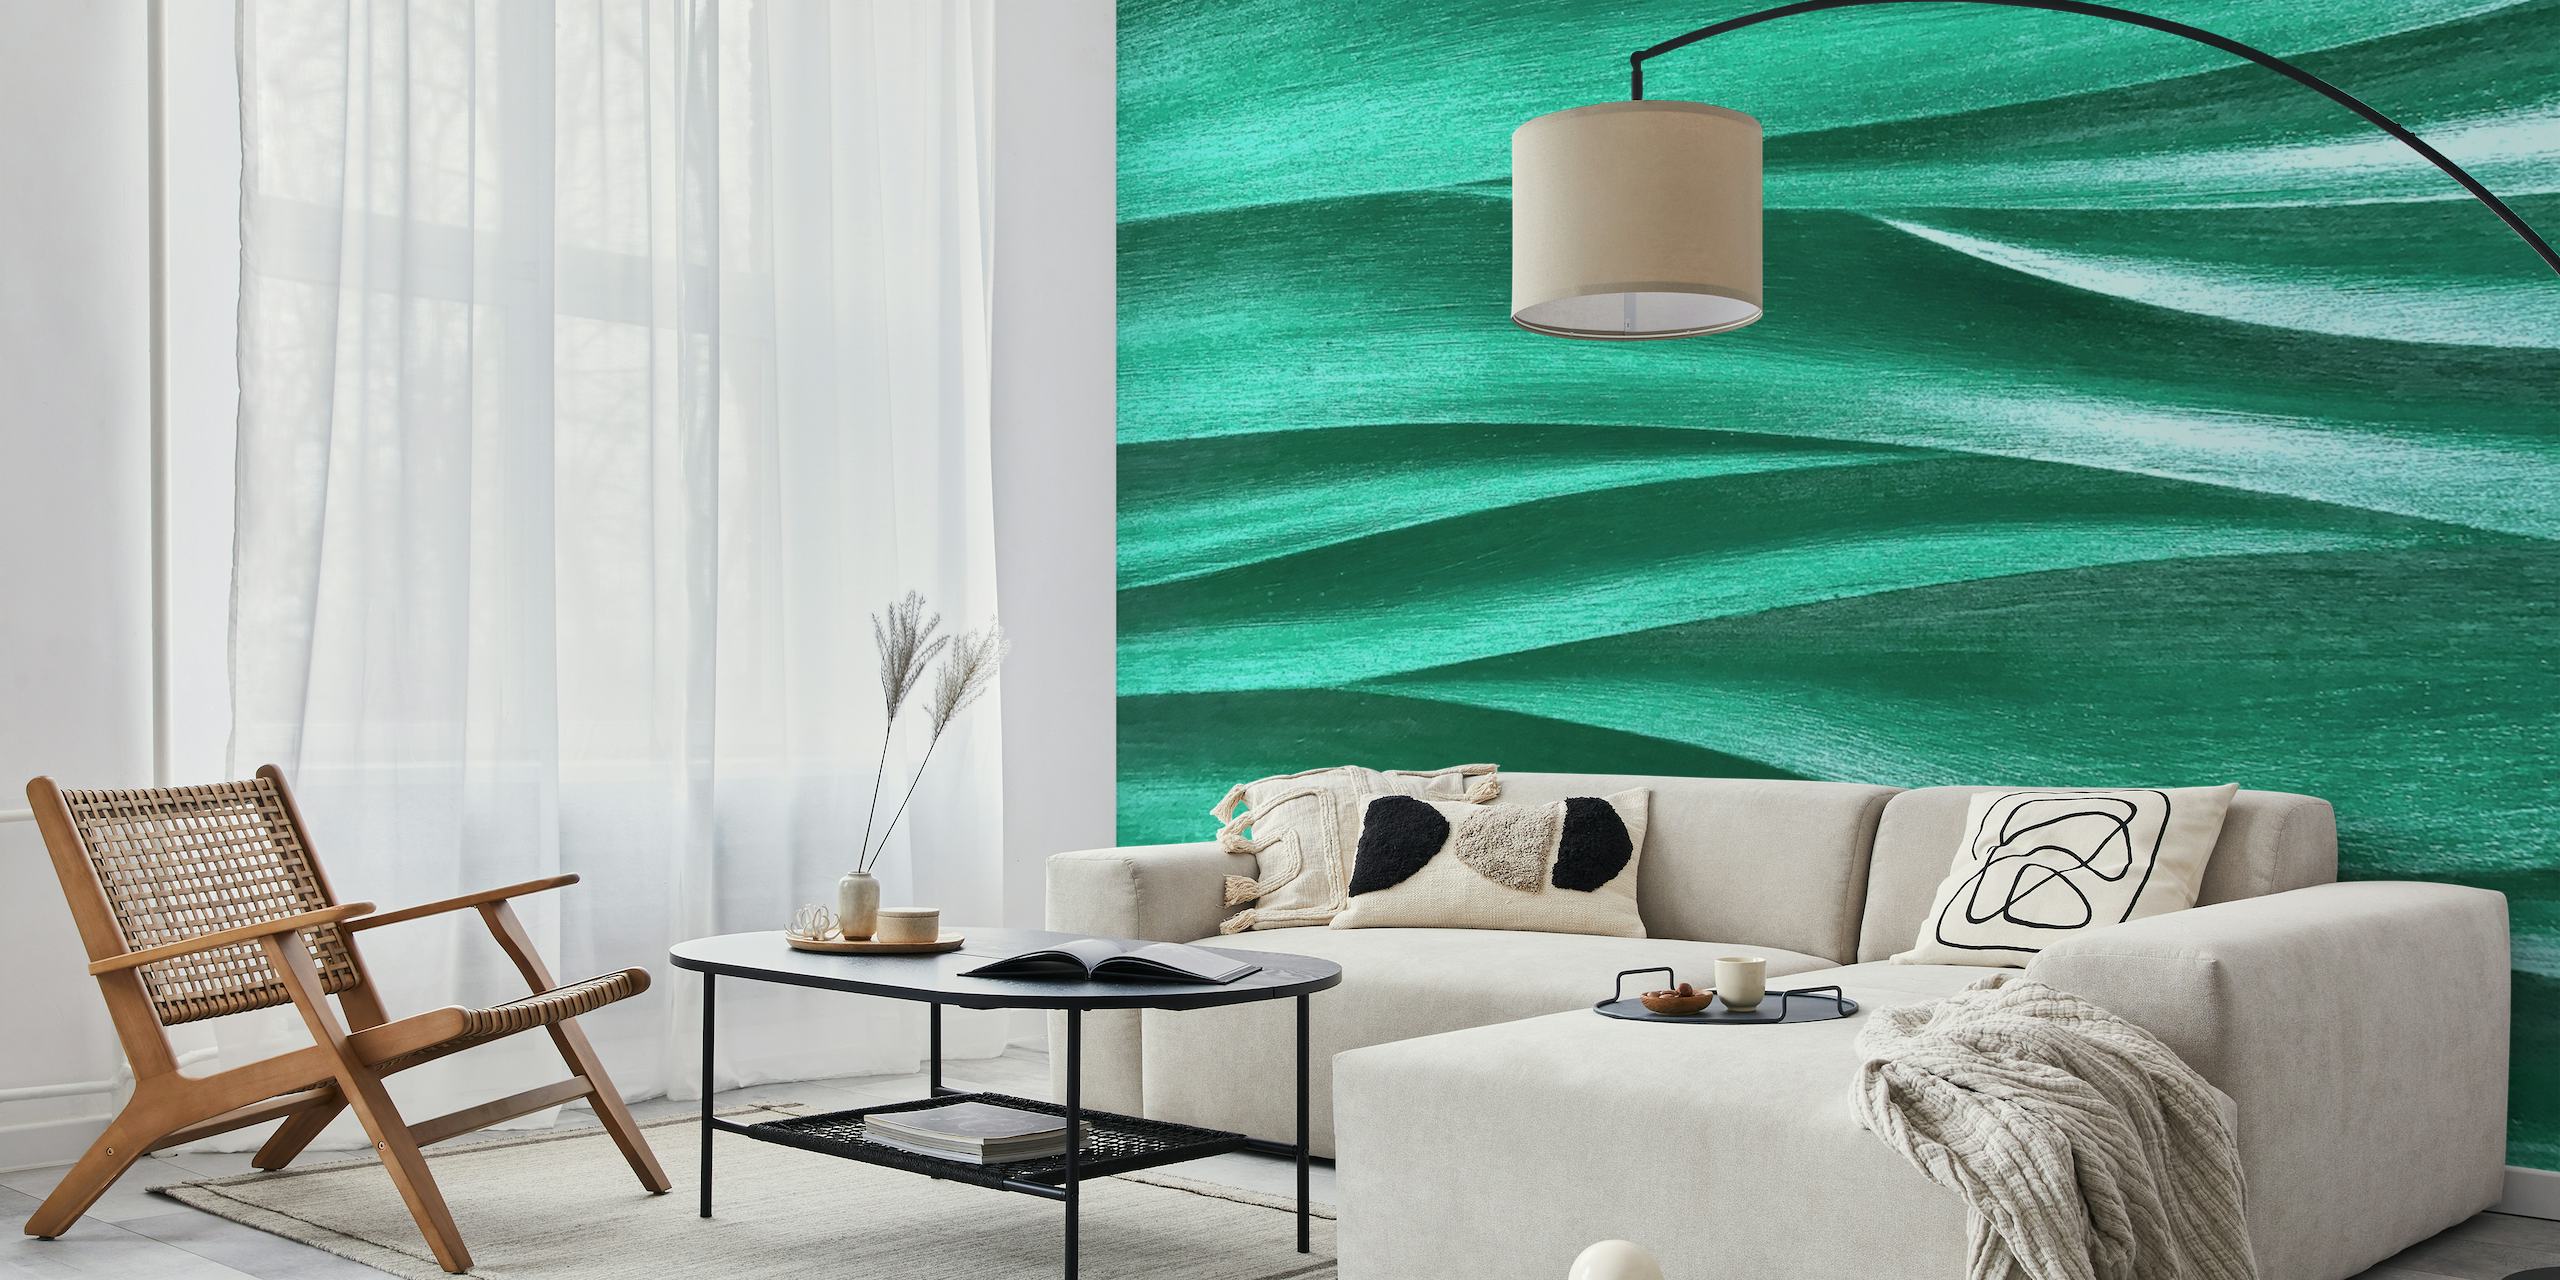 Smaragdinvihreä aaltokuvioinen seinämaalaus rauhalliseen sisustukseen.